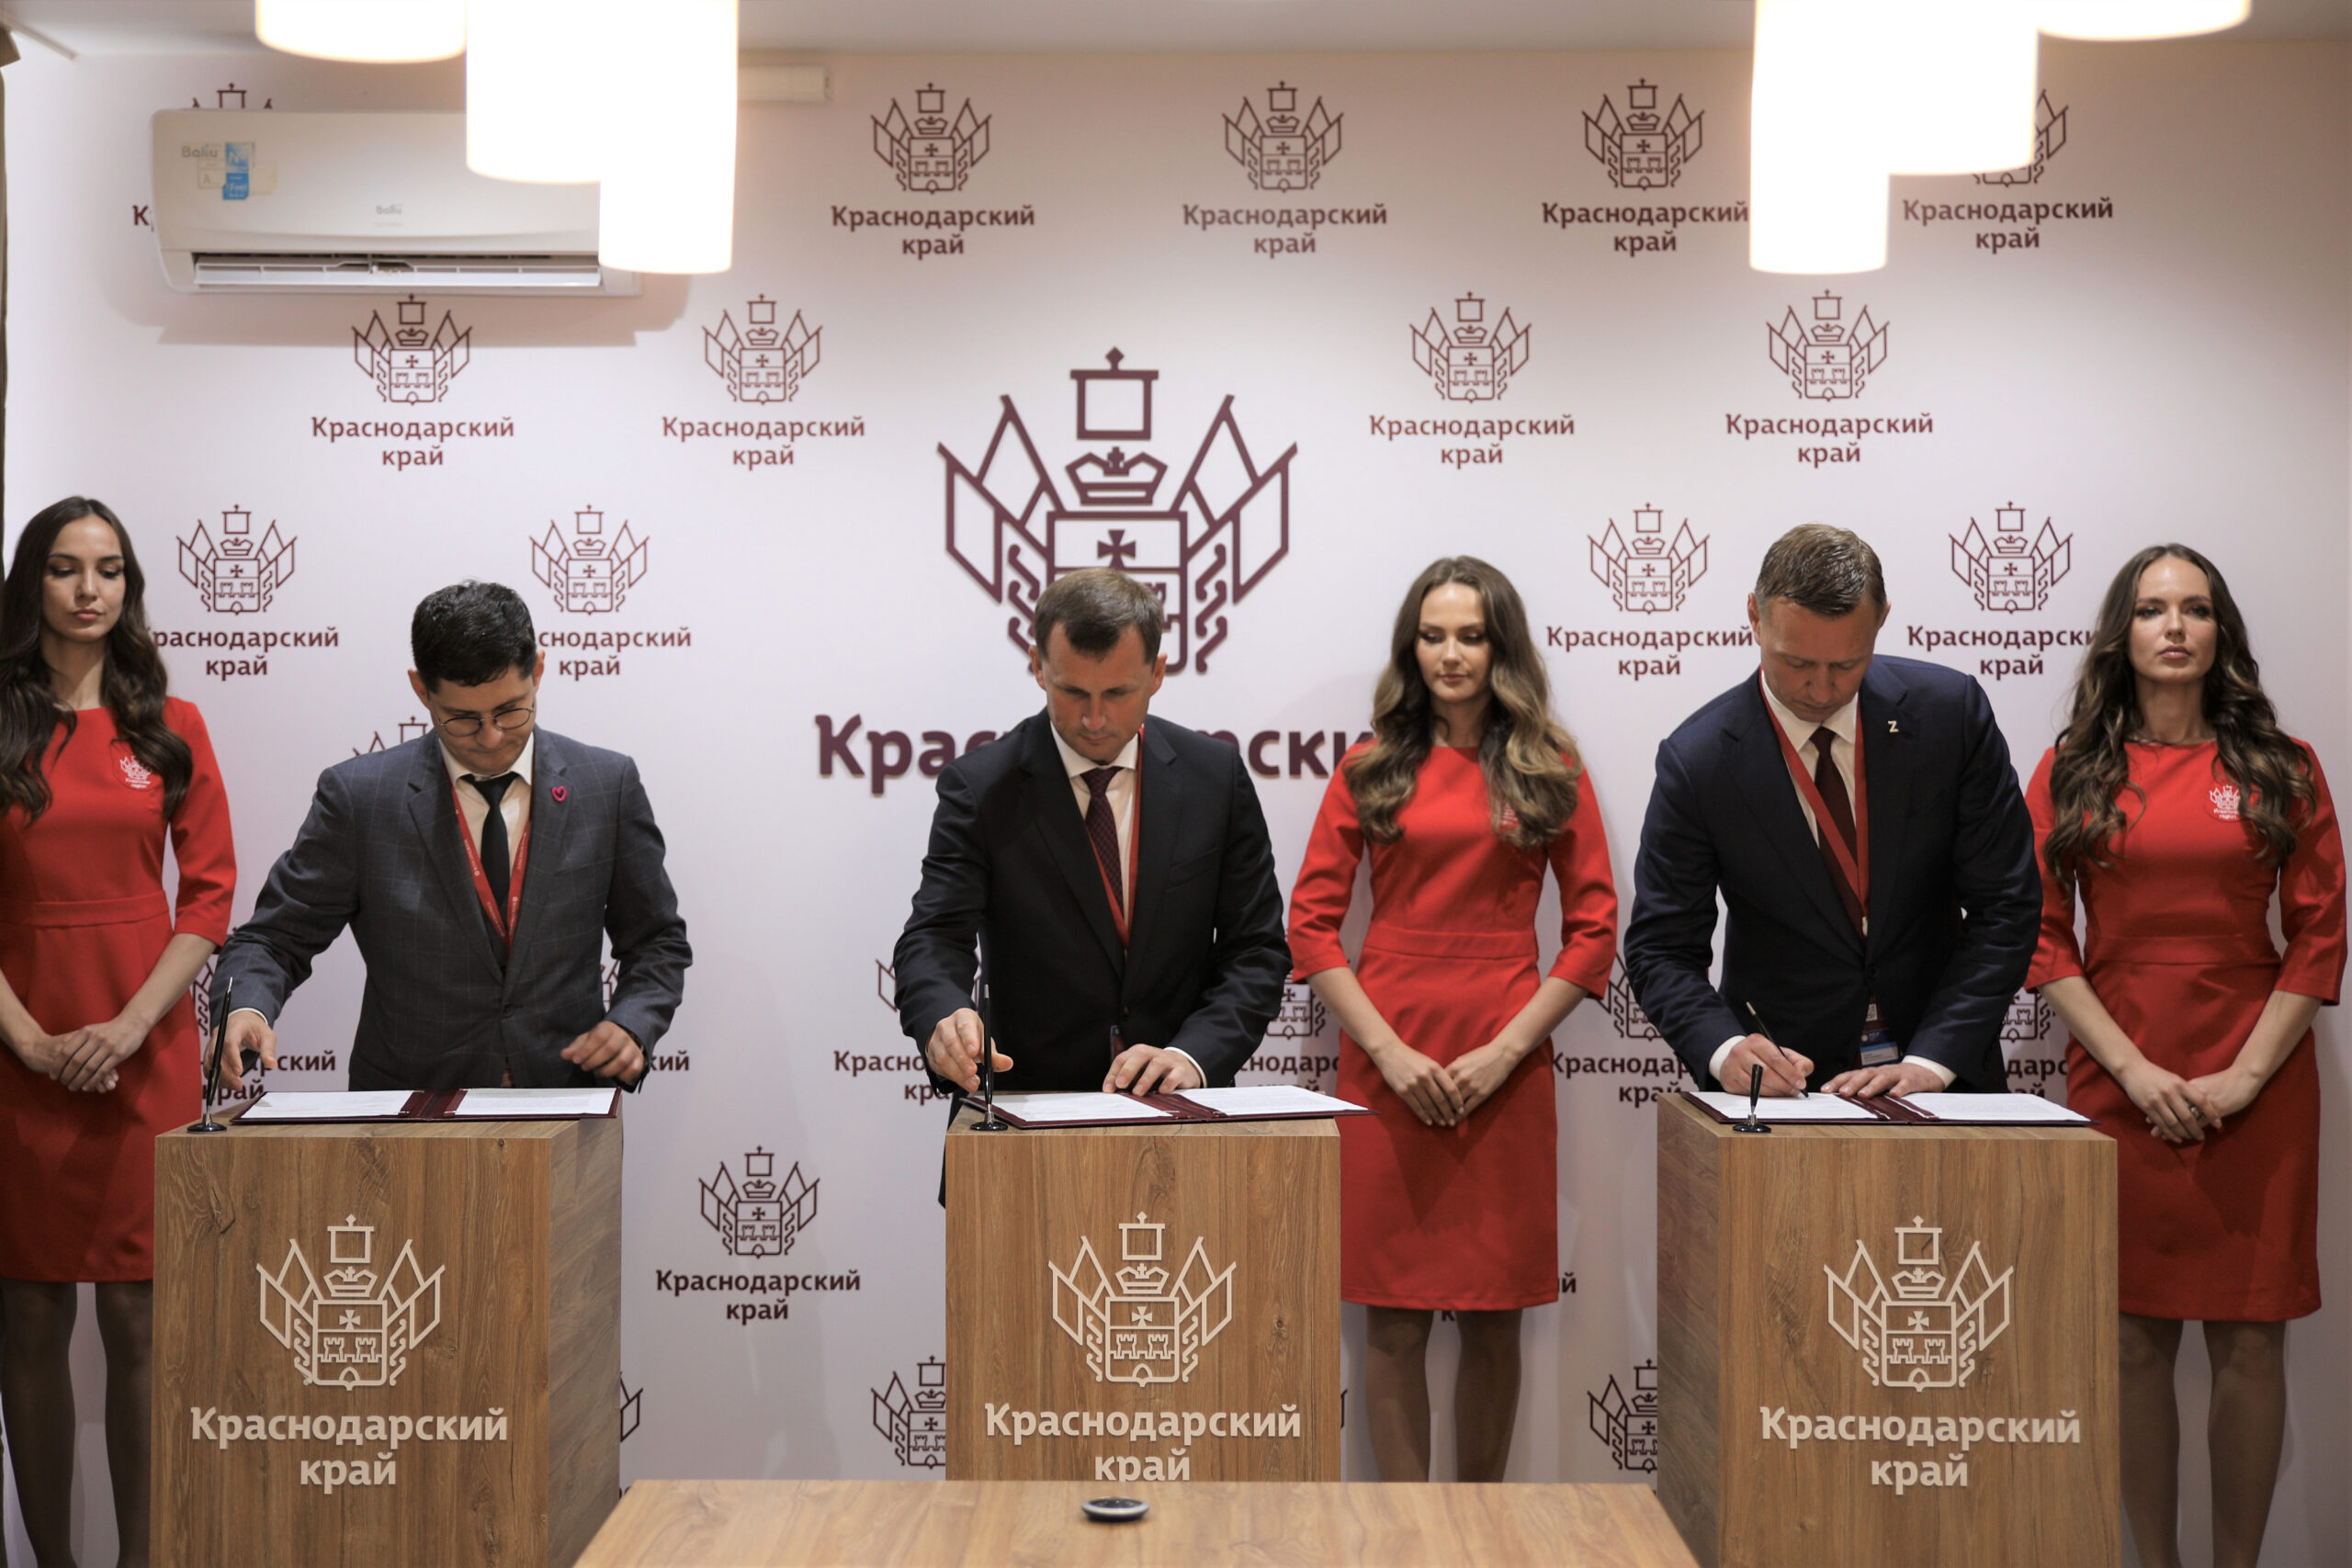 Салаты, вино и виноградники: Новороссийск подписал первые инвестсоглашения на экономическом форуме в Санкт-Петербурге